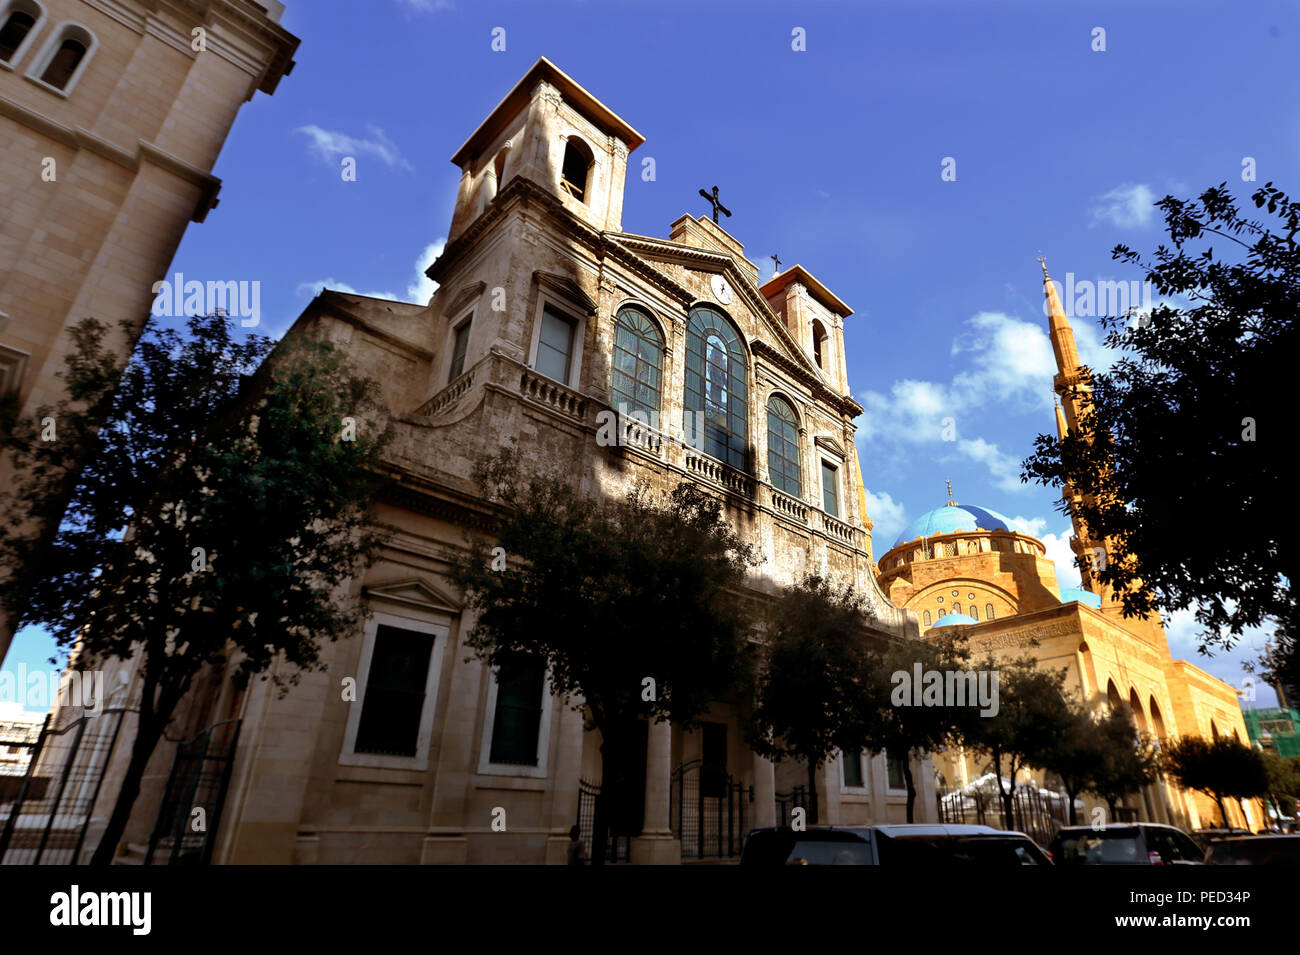 Saint George maronitische Kathedrale und sunnitisch-muslimischen Mohamed Al Amin Moschee in der Beiruter Innenstadt, war einer der libanesischen Bürgerkrieg Tötung Zonen. Stockfoto